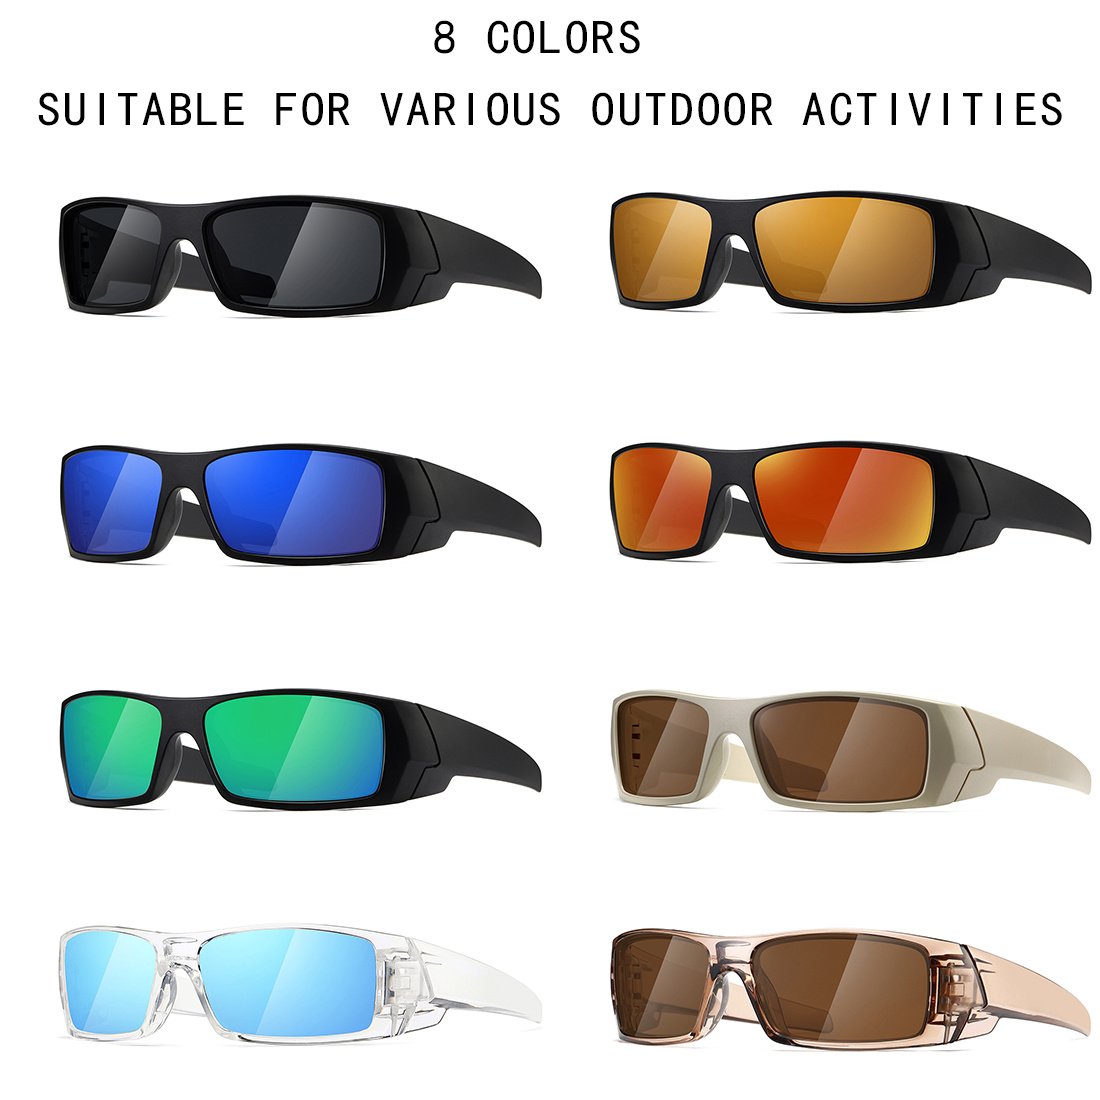 Gafas de sol de moda, unisex, cómodas monturas, gafas, protección solar,  gafas de sol para mochileros, ciclismo, escalada, camping, cosplay. , azul  claro Sunnimix Gafas de sol de moda